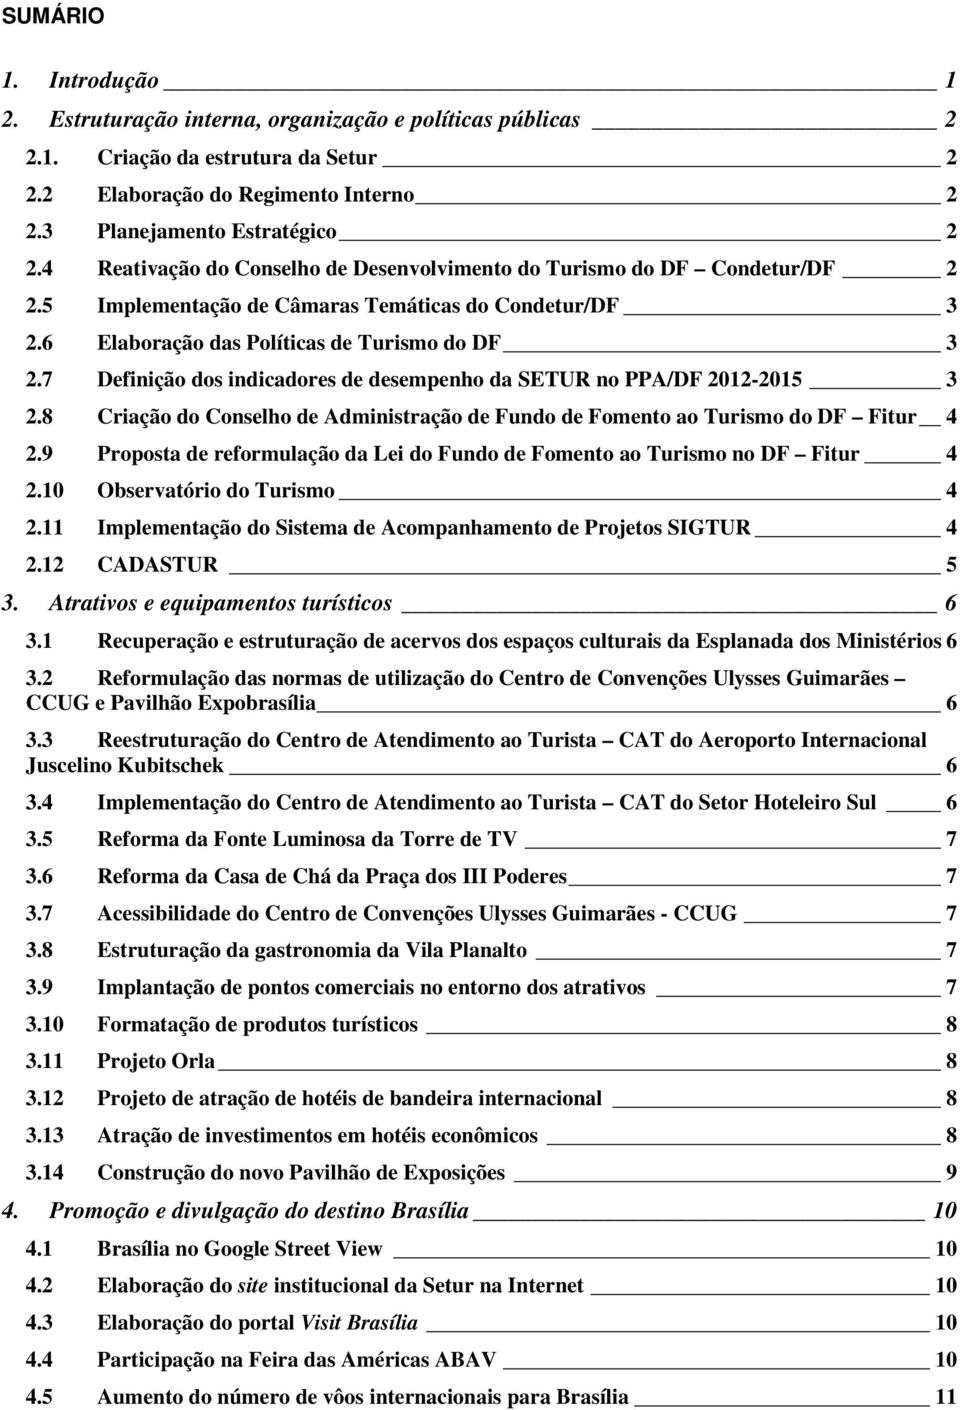 7 Definição dos indicadores de desempenho da SETUR no PPA/DF 2012-2015 3 2.8 Criação do Conselho de Administração de Fundo de Fomento ao Turismo do DF Fitur 4 2.